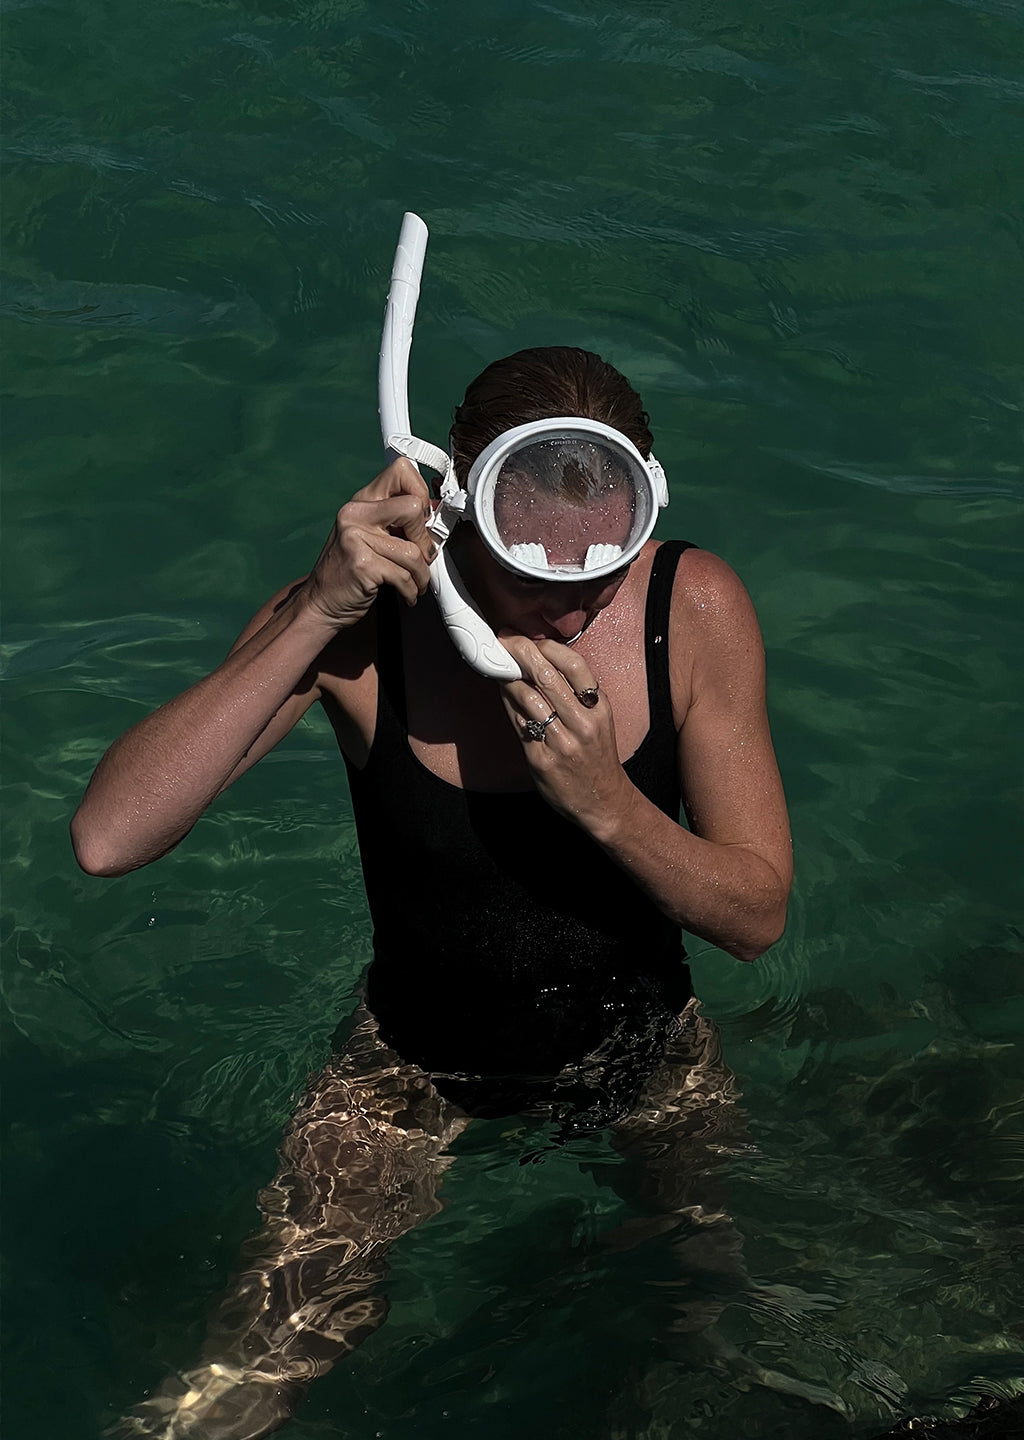 Dive Mask & Snorkel Set